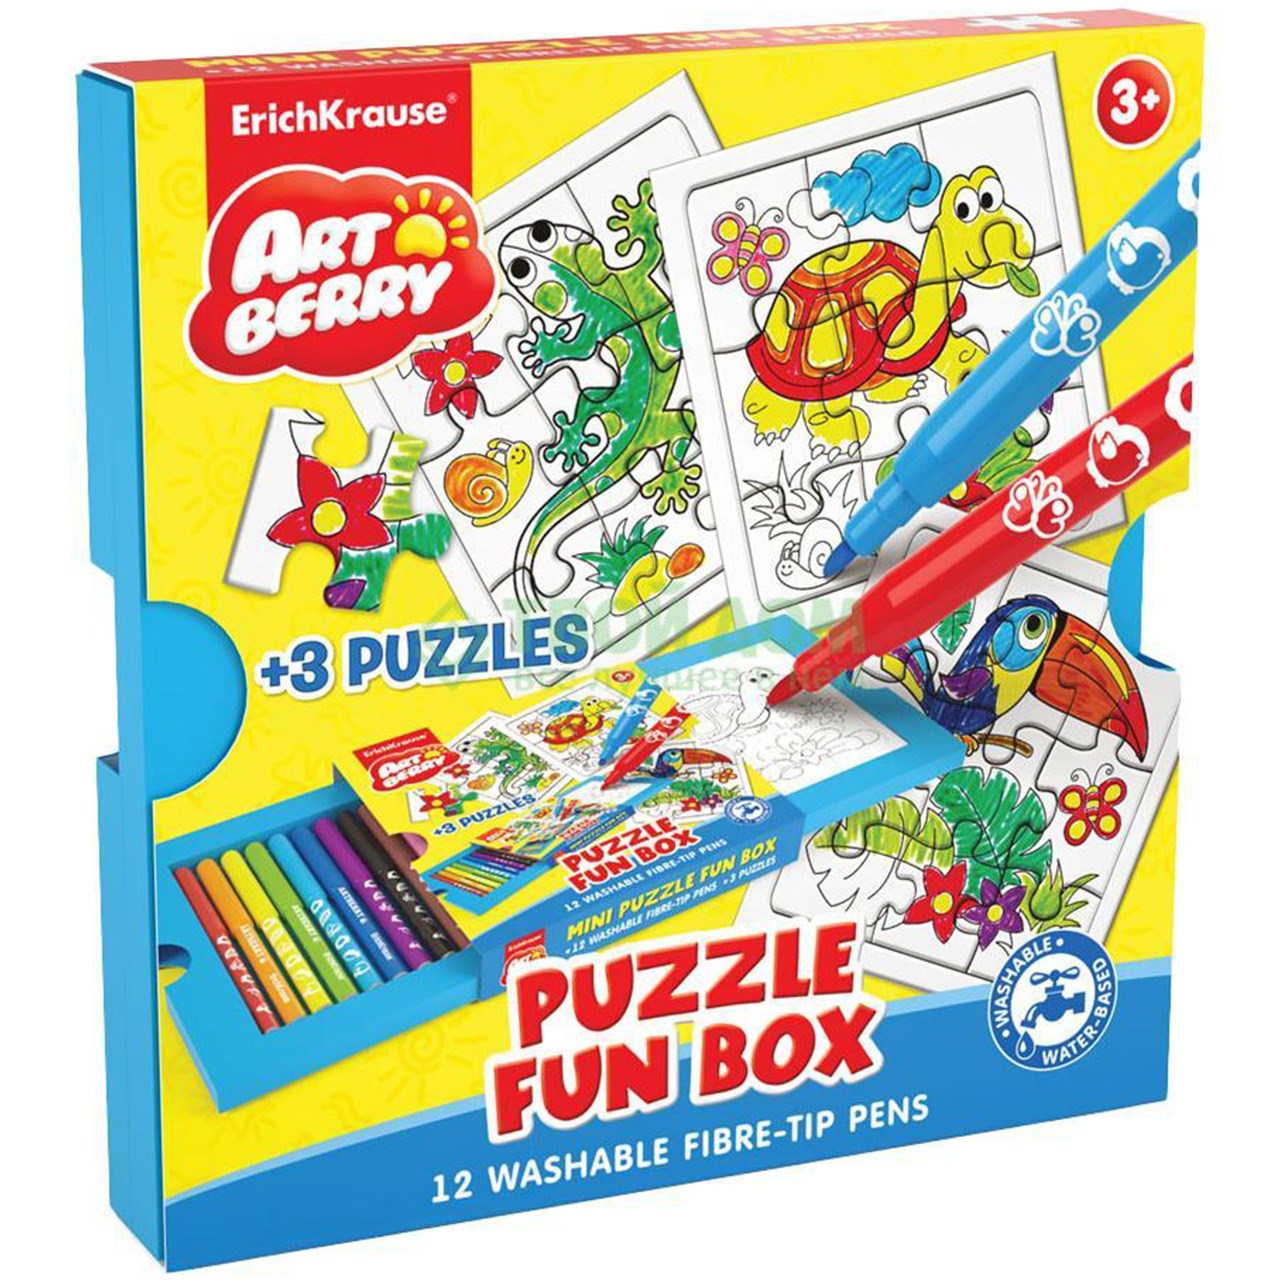 بسته رنگ آمیزی اریک کراوزه مدل Puzzle Fun Box